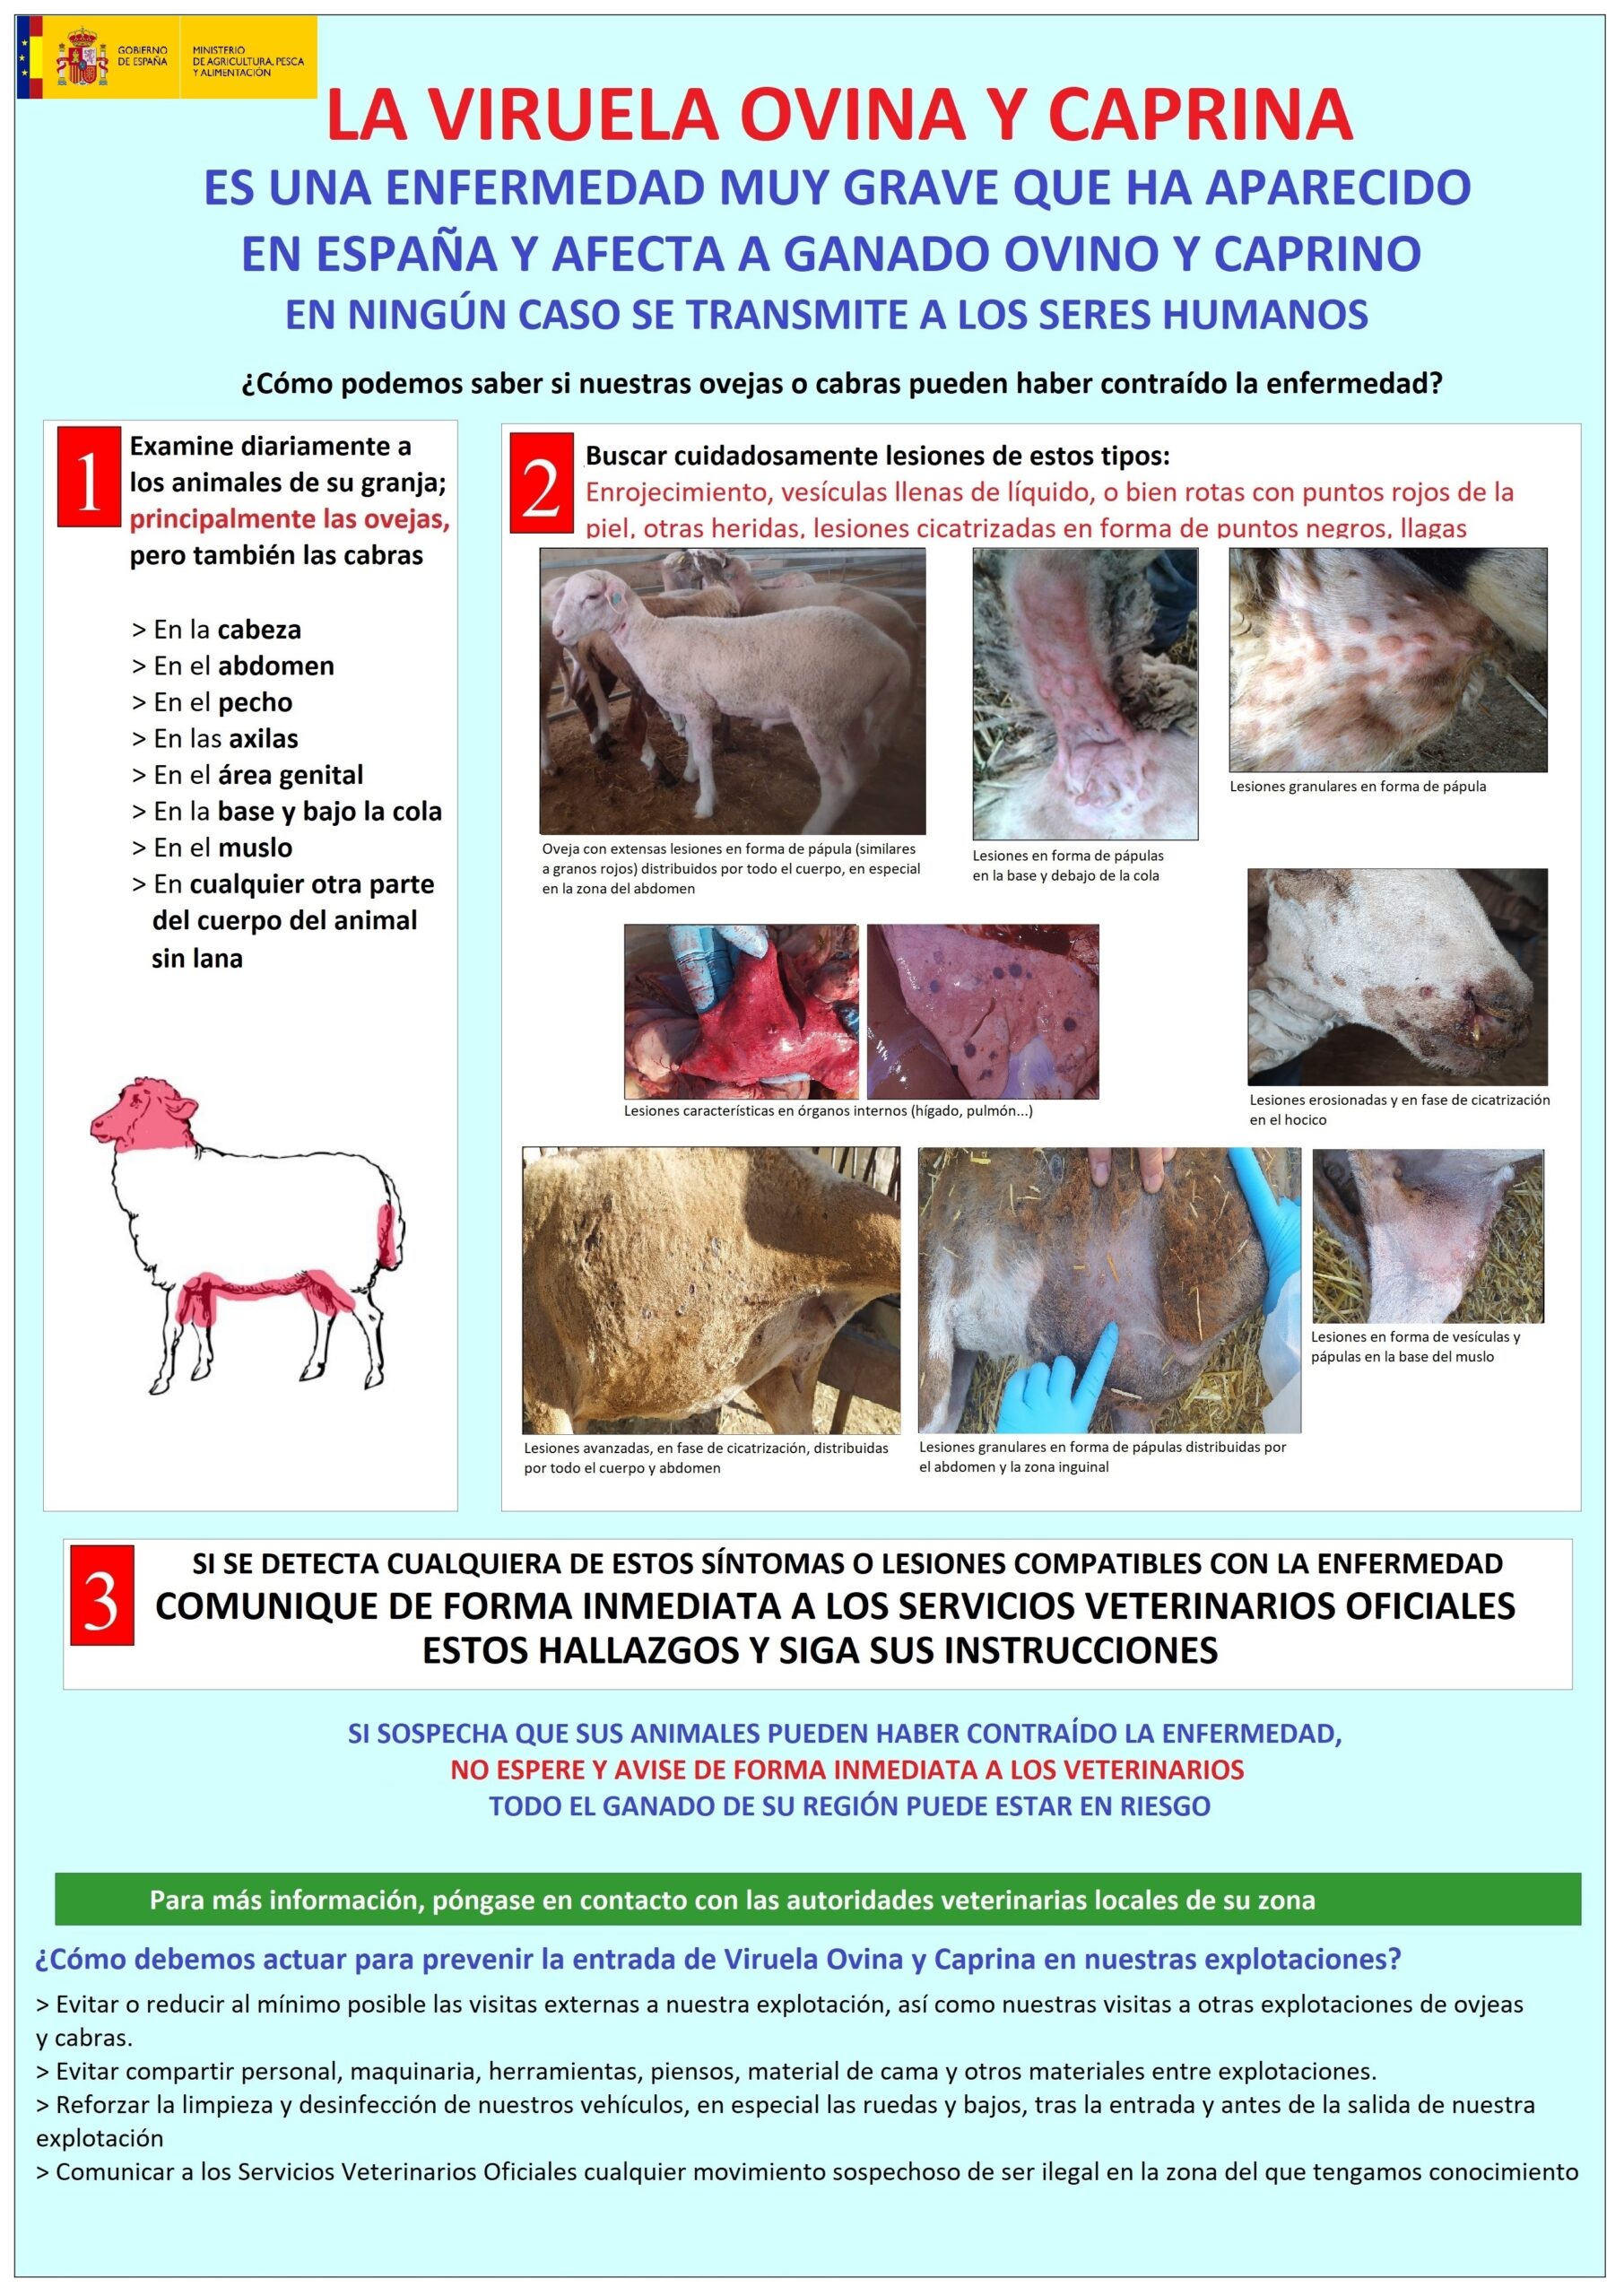 Aplicación de la vacuna contra la viruela ovina y caprina, instrucciones.